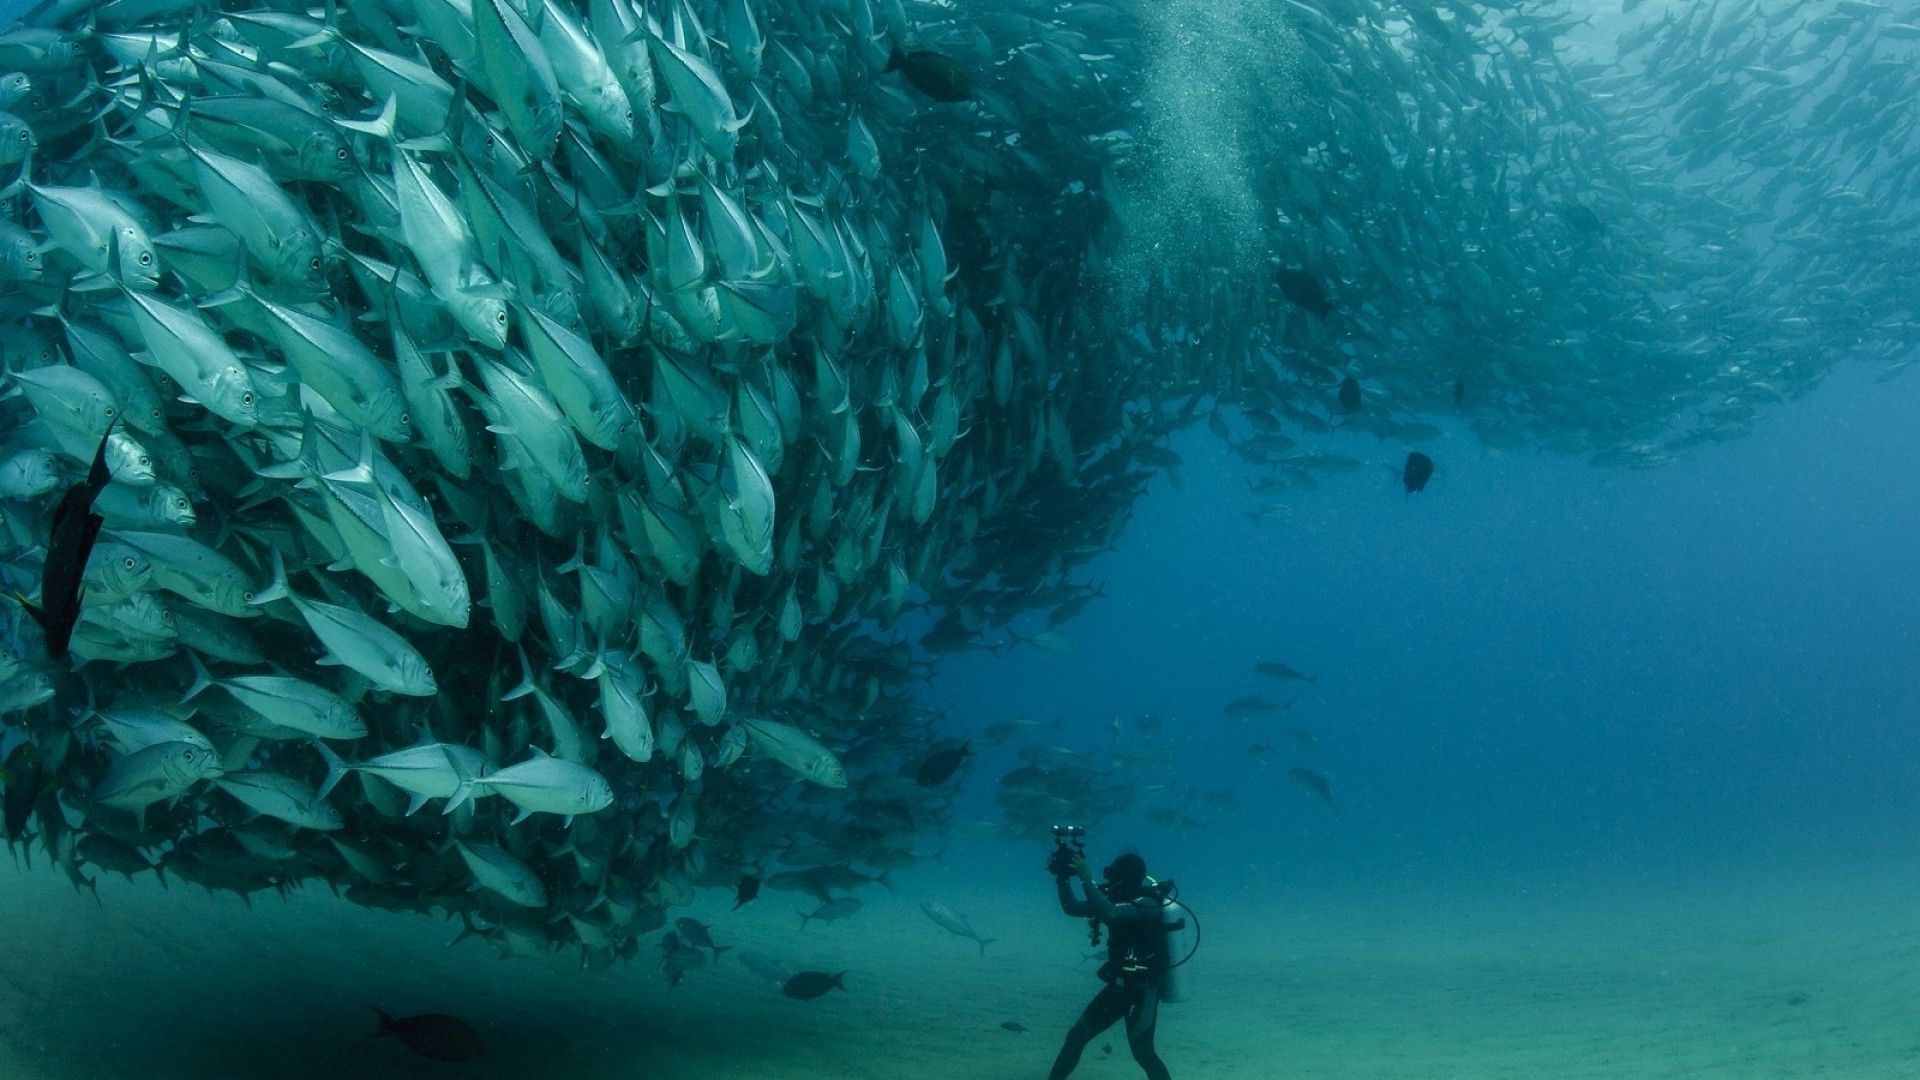 تصویر غواص در حال فیلم برداری از دسته بزرگ ماهی ها